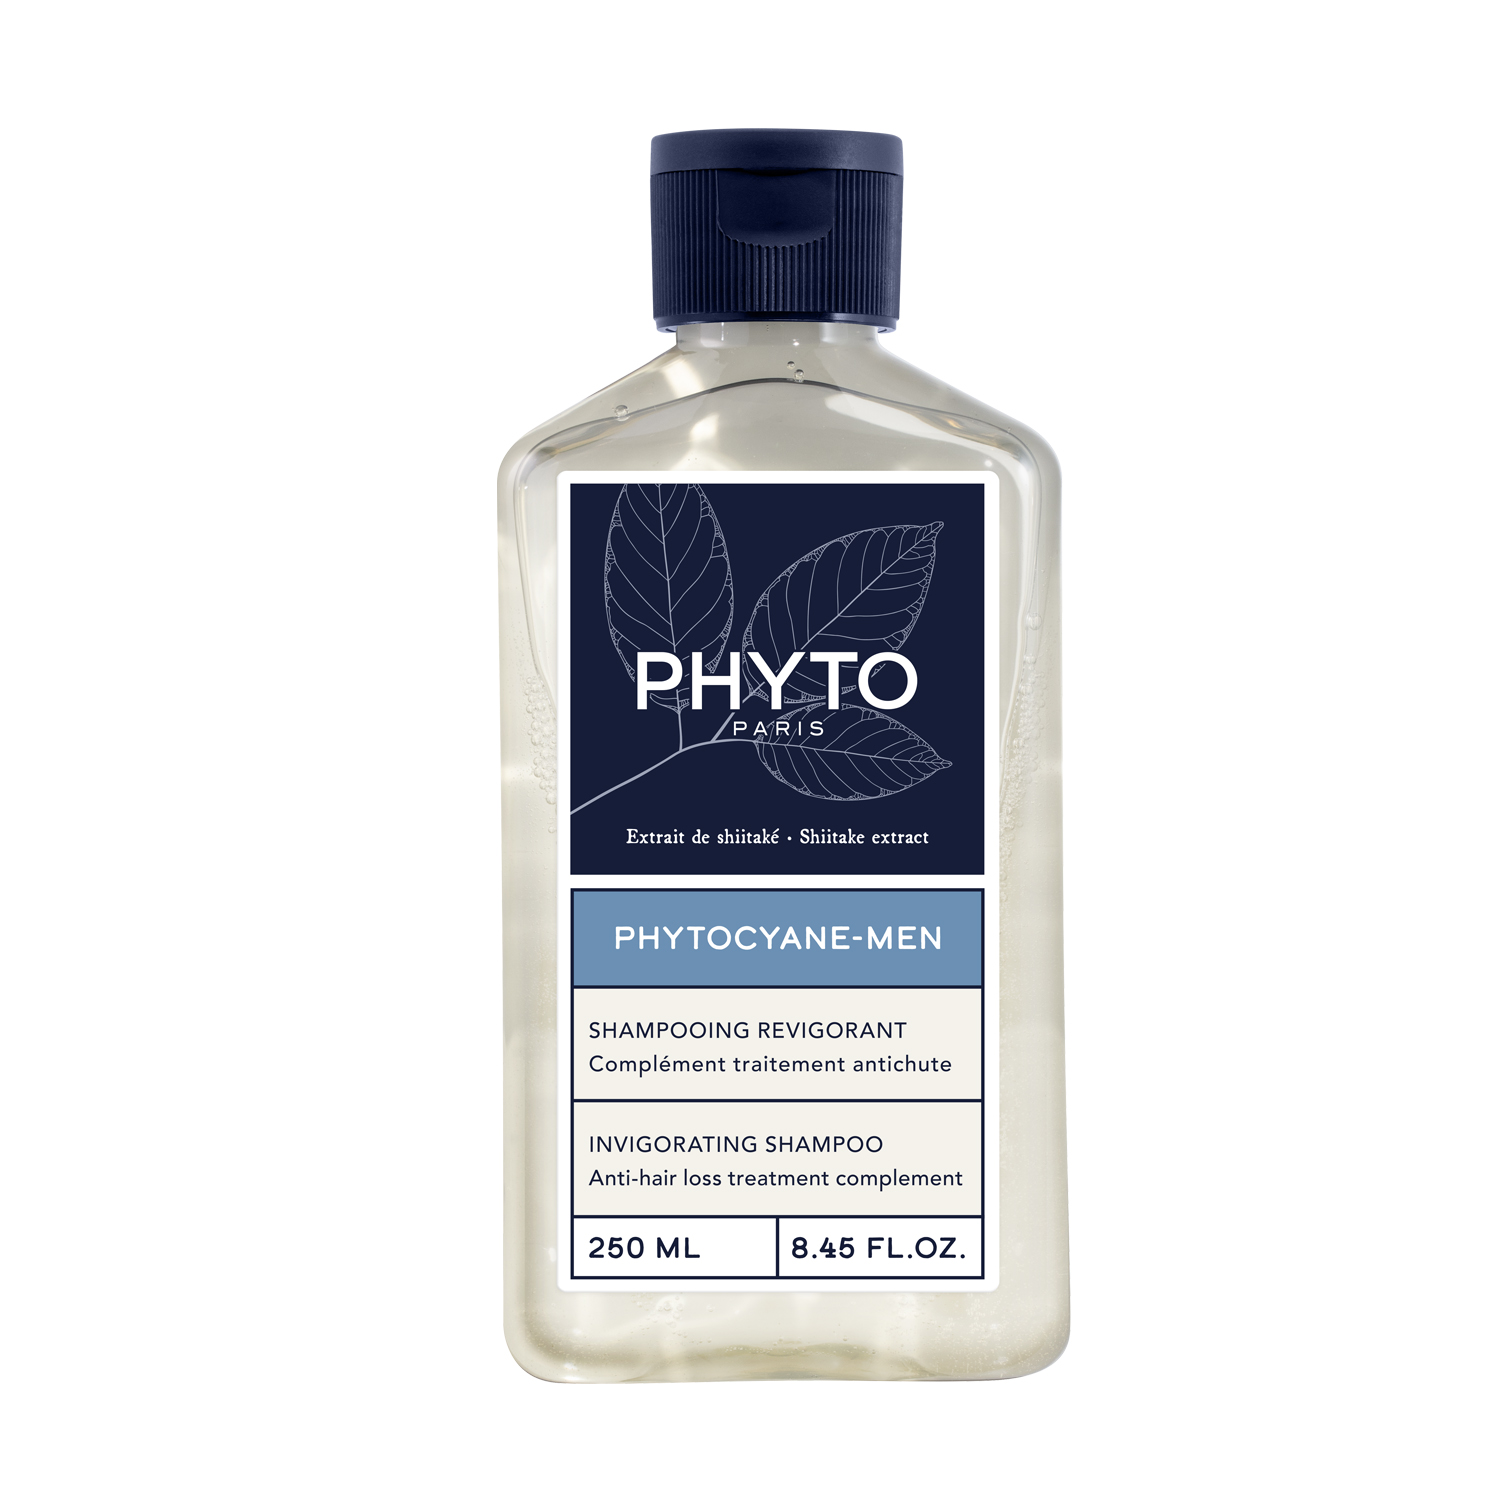 PHYTO PHYTOCYANE укрепляющий шампунь для волос 200мл, Lab.Phytosolba  - купить